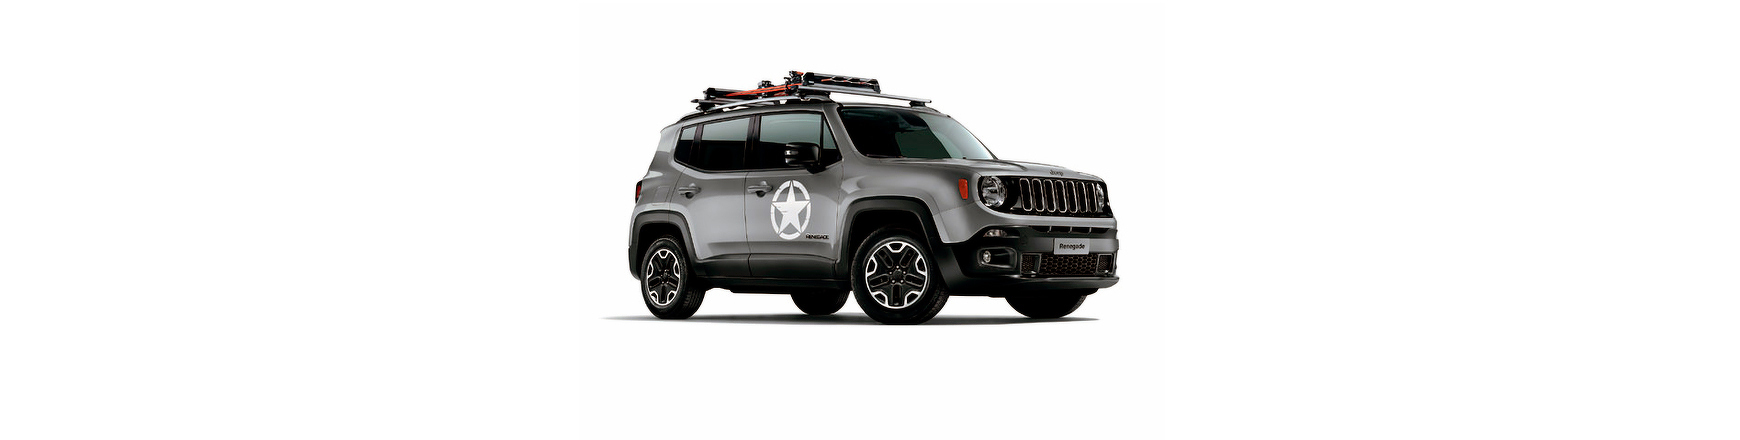 Piezas y Recambios de Jeep Renegade de 2014 a 2019 | Veramauto.es